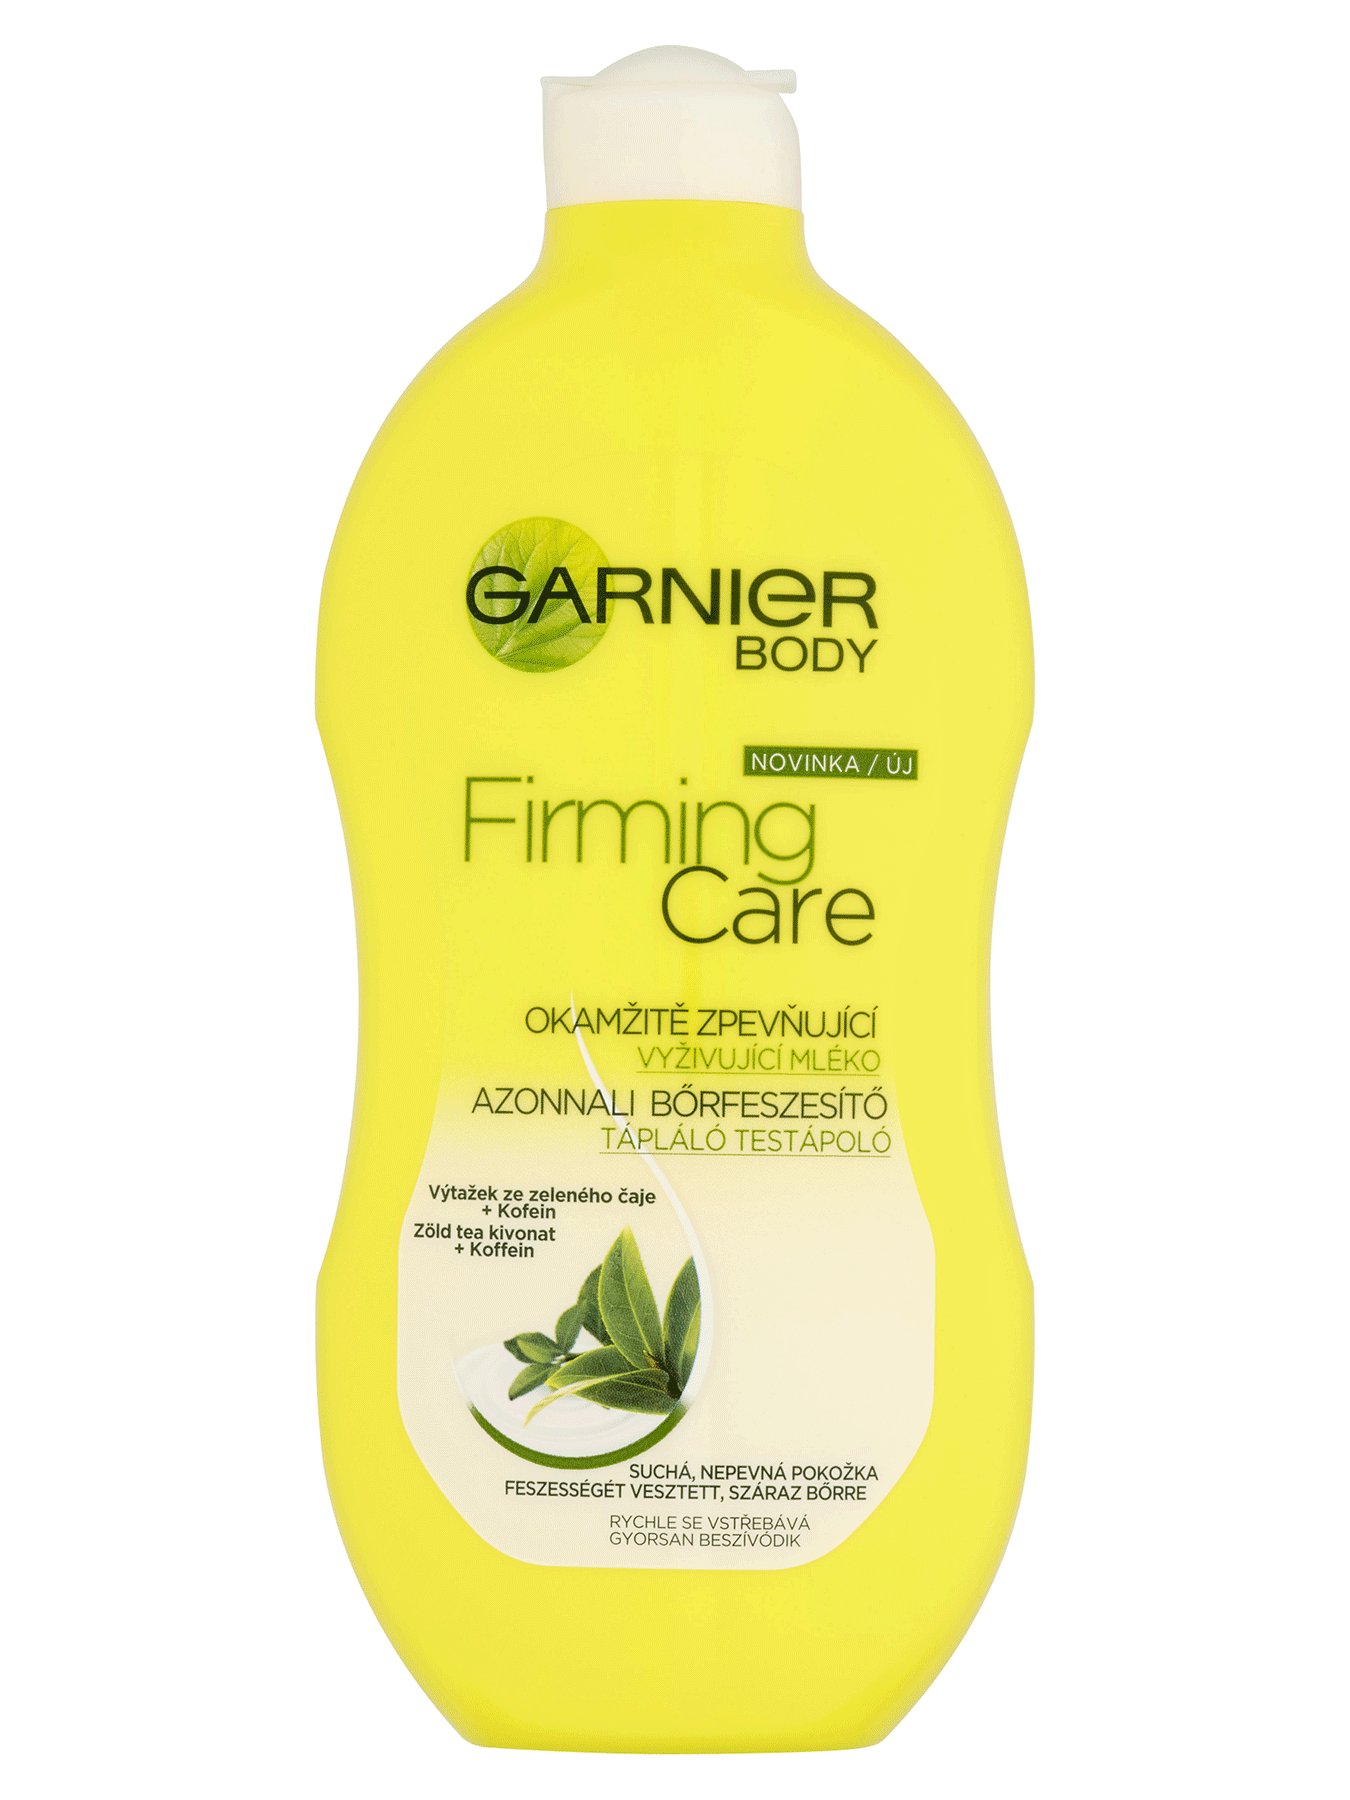 Garnier Body Firming Care azonnali bőrfeszesítő, tápláló testápoló, 400 ml